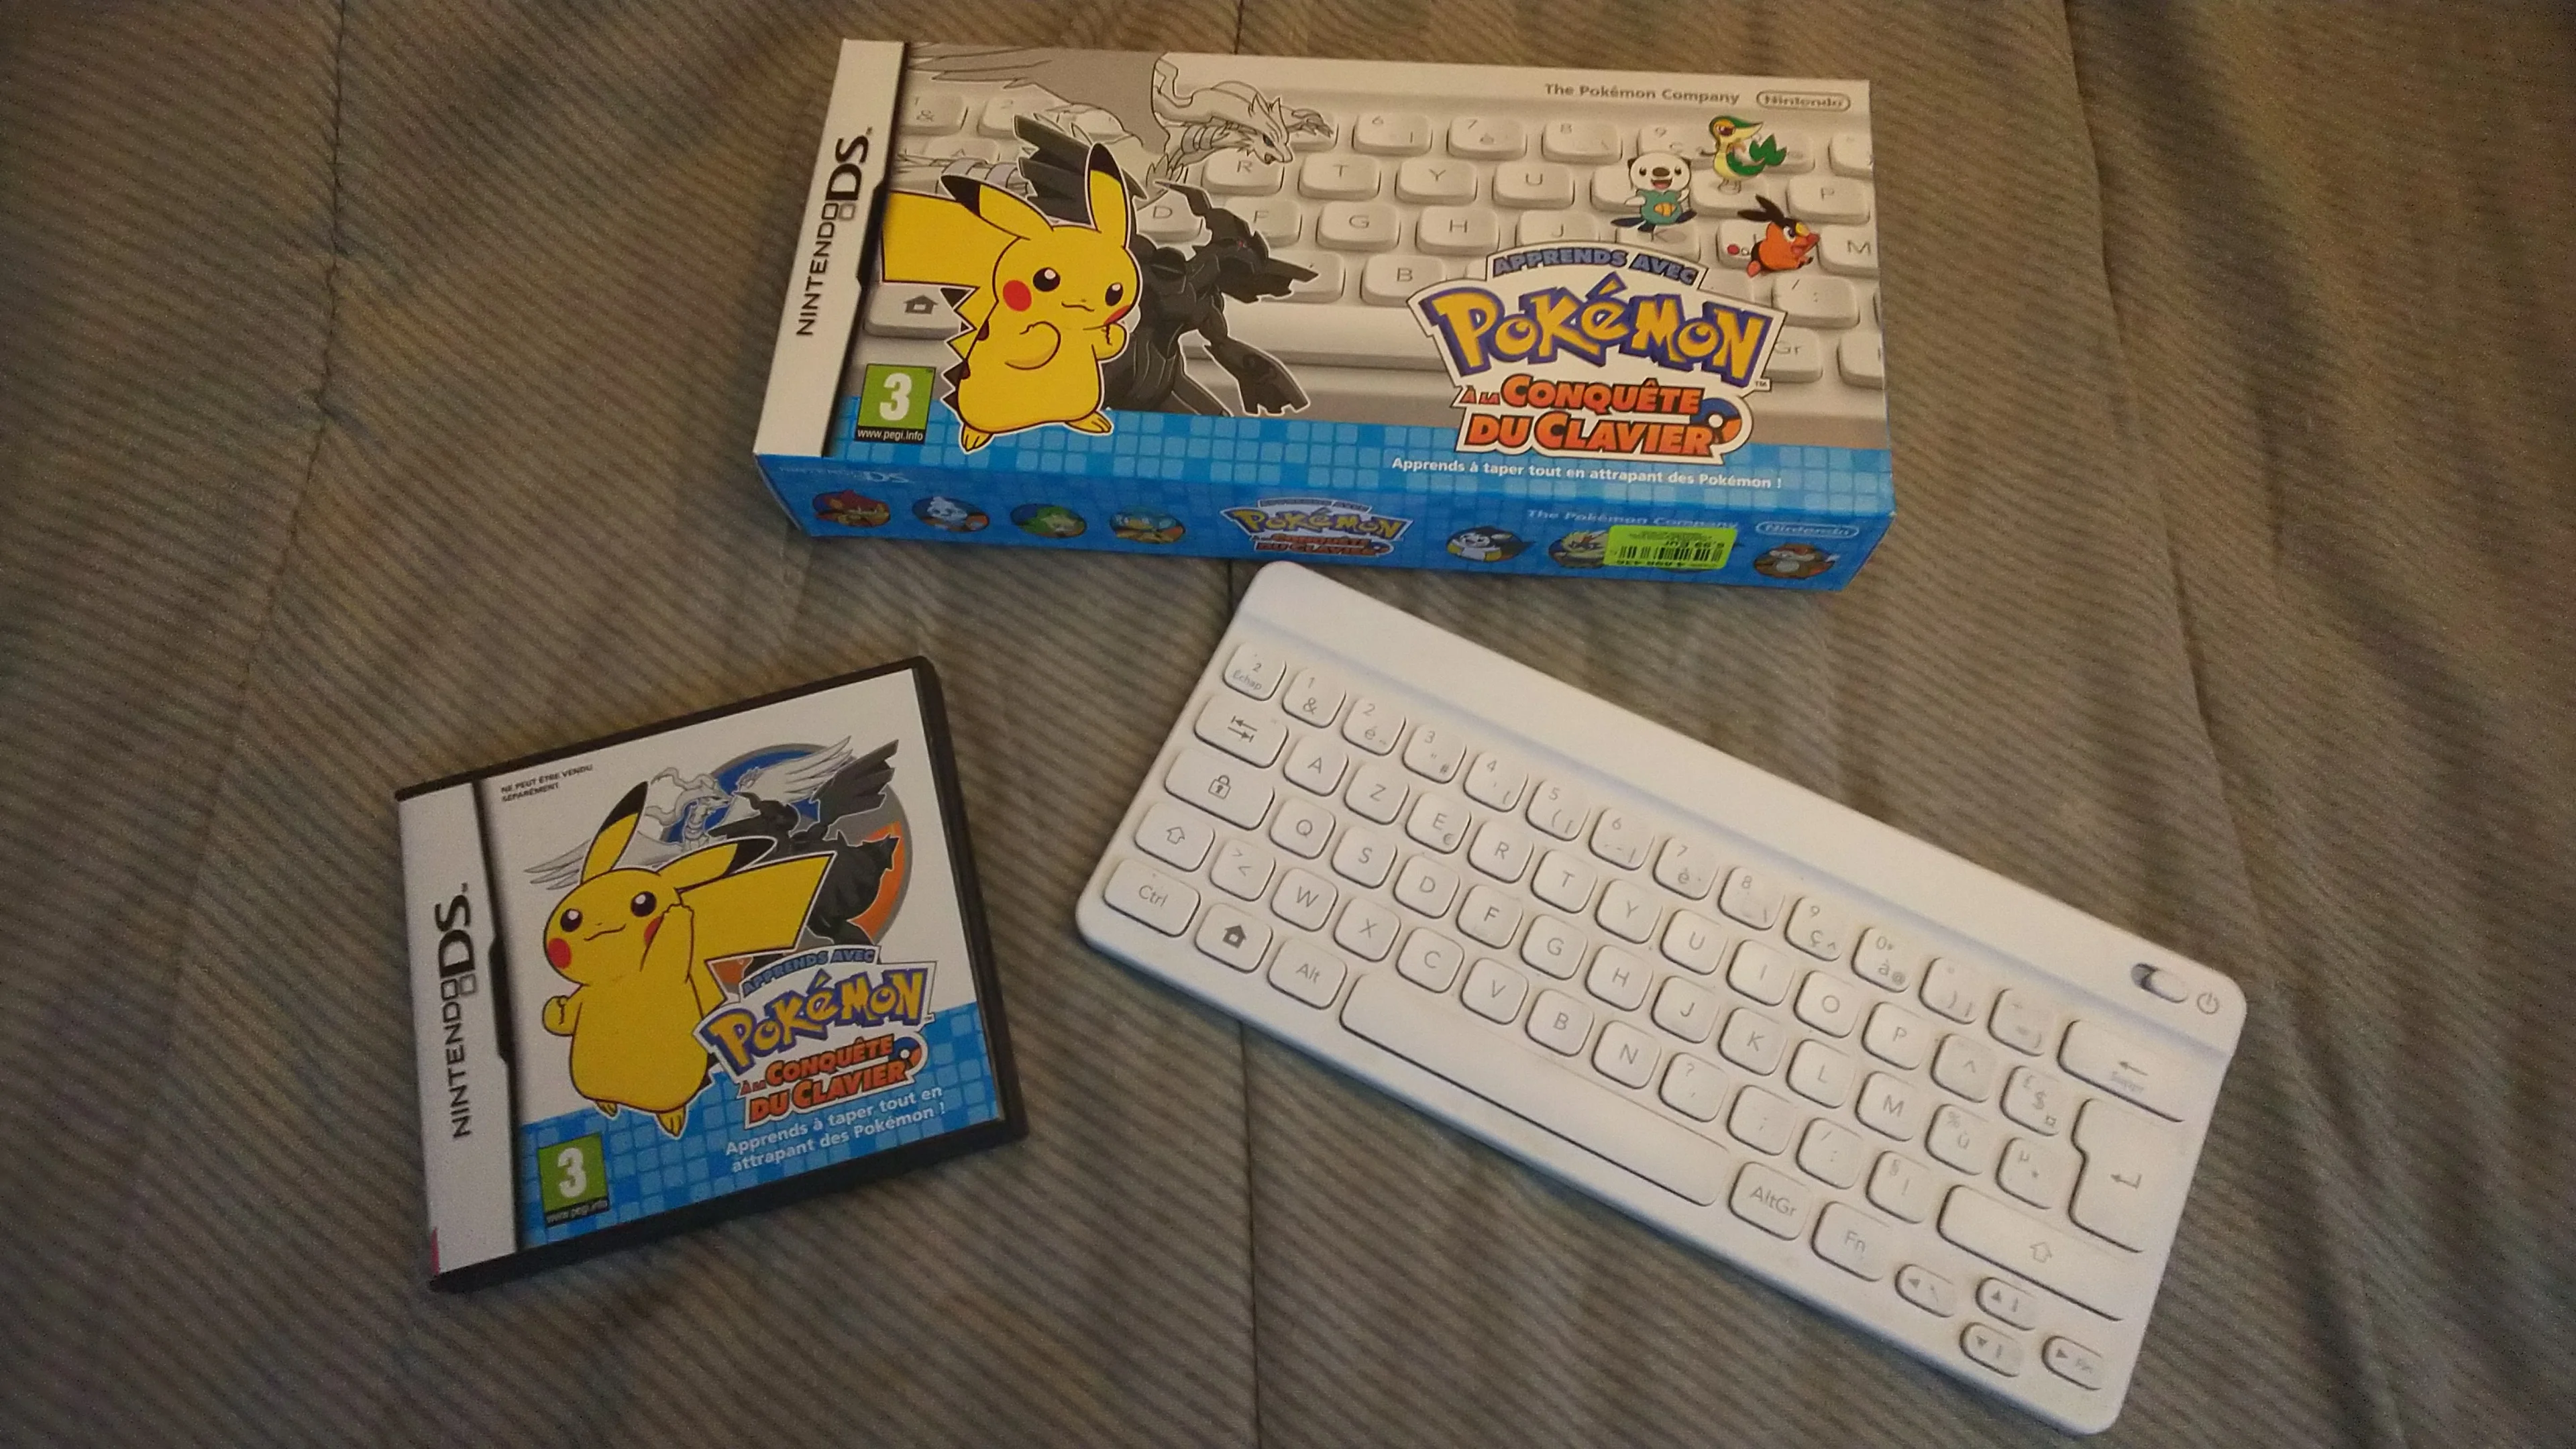  Nintendo DS Pokemon Keyboard